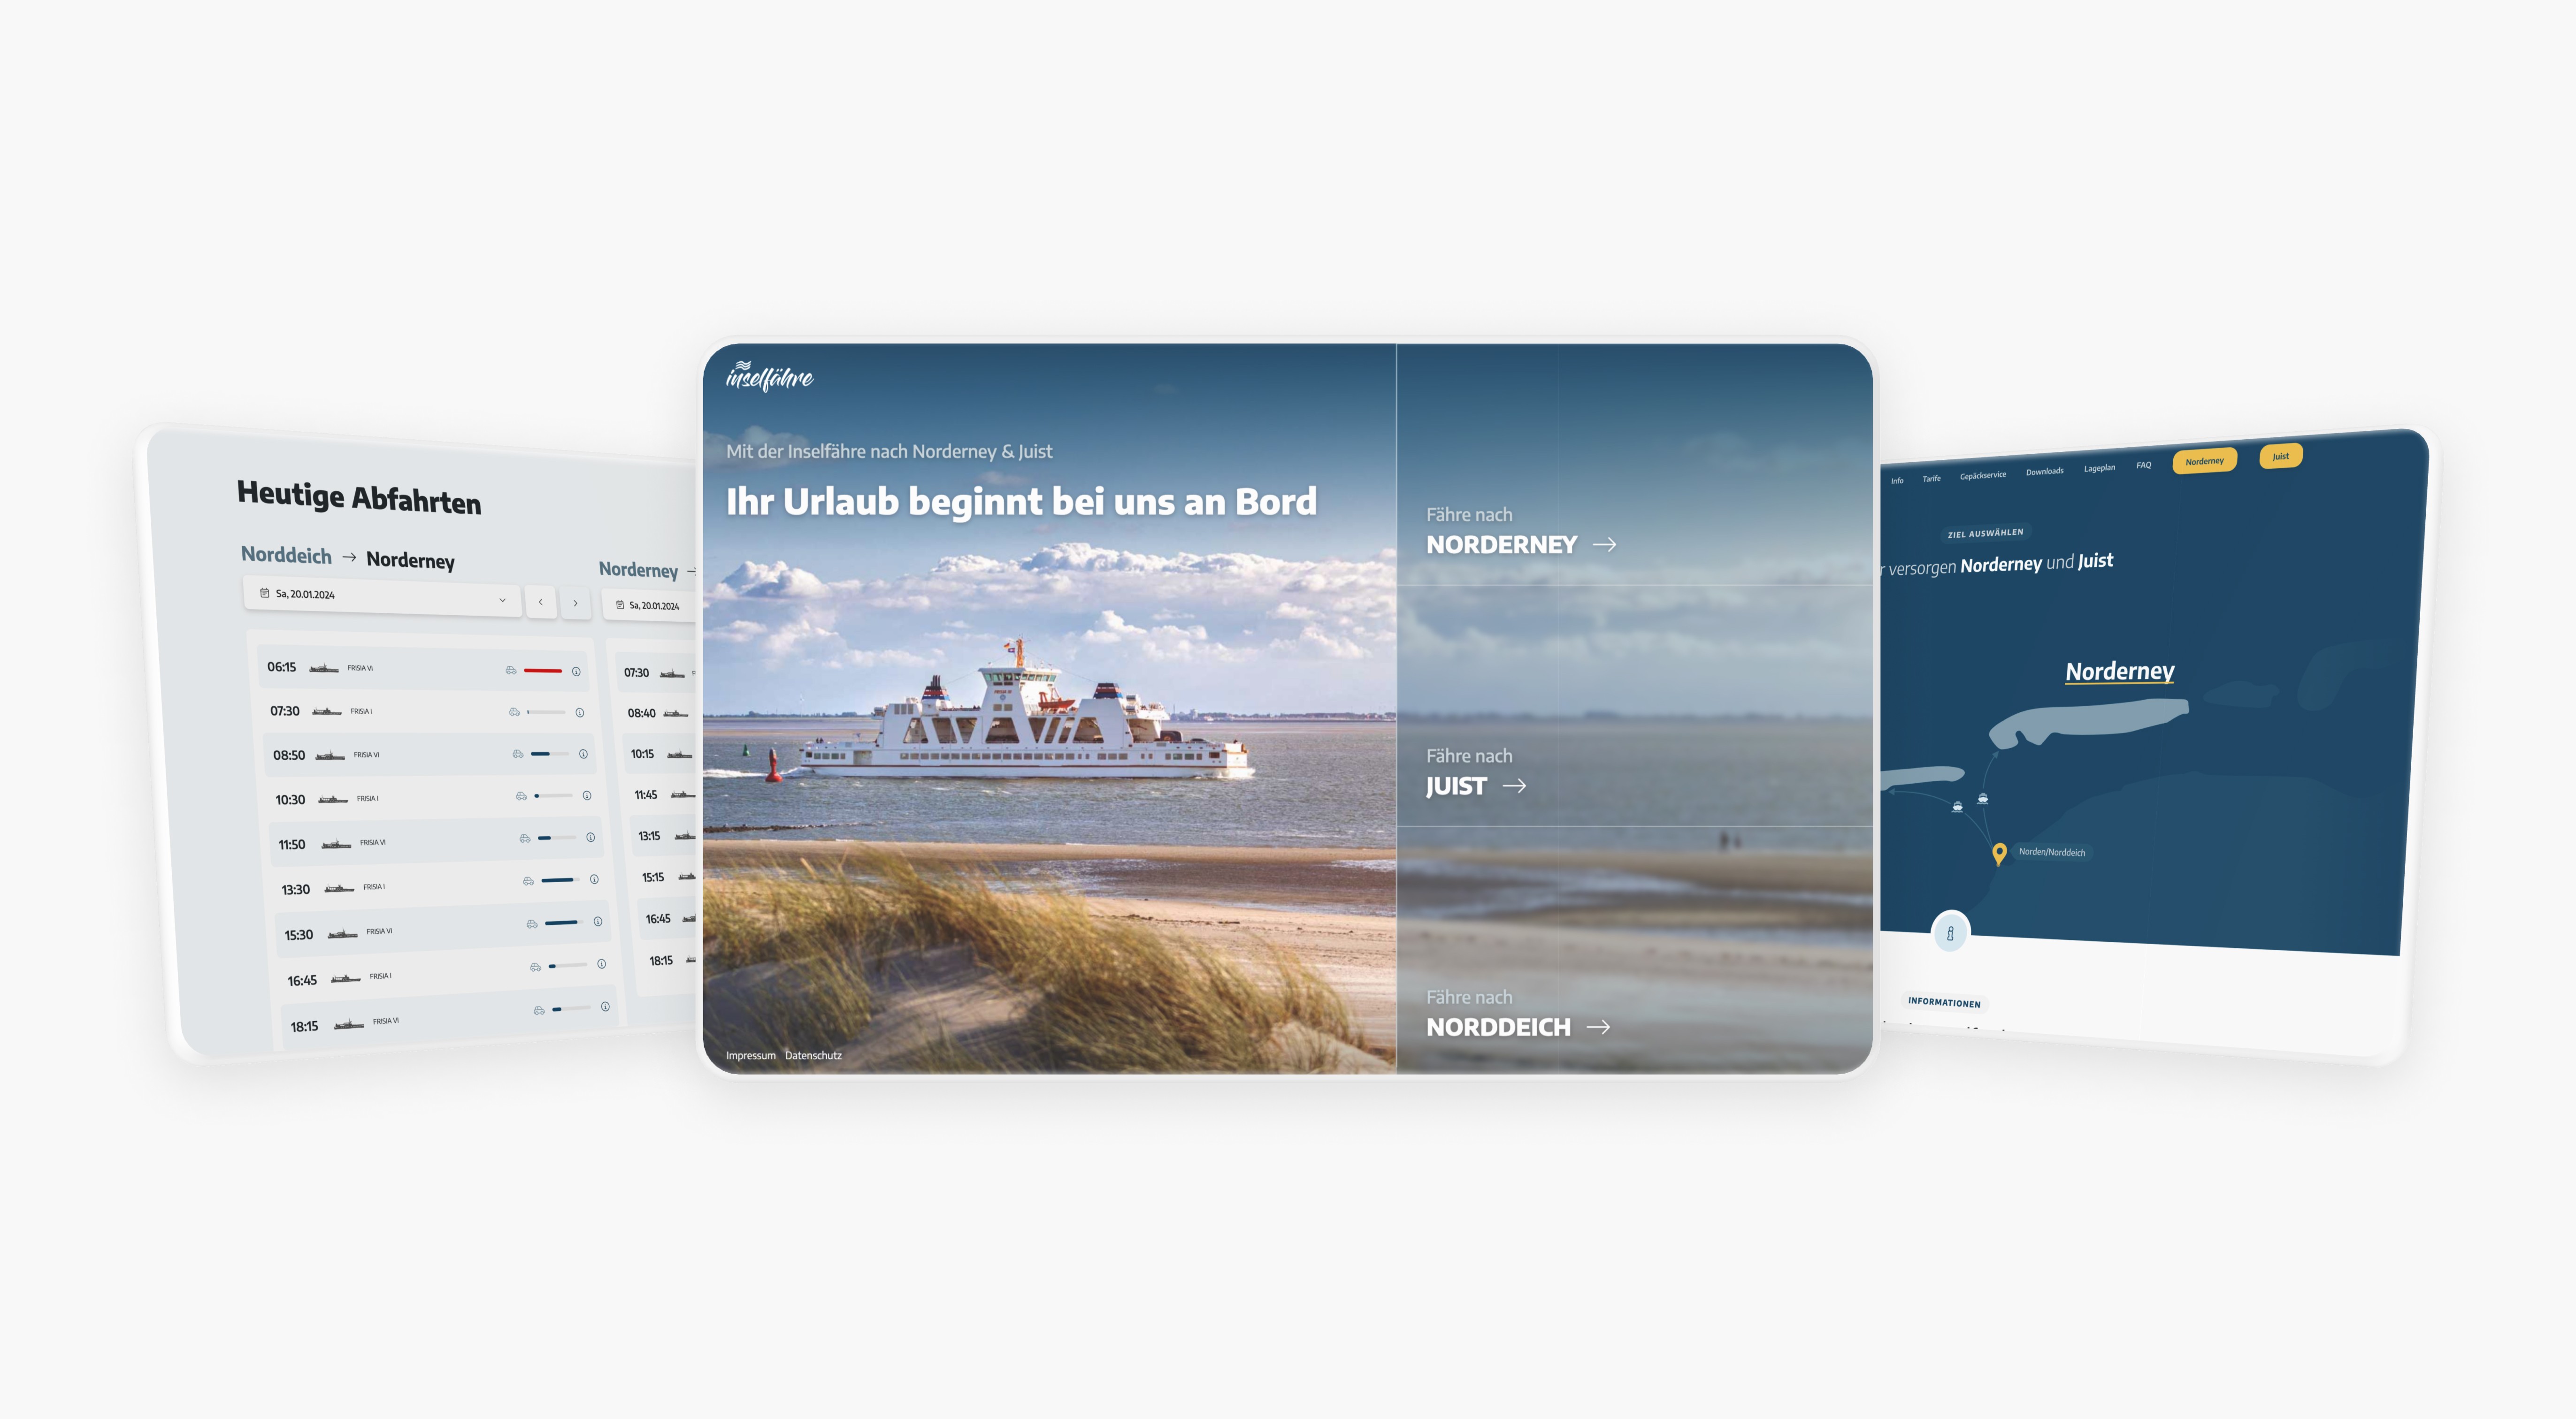 Digitale Anzeigen von Fahrplänen und Werbebildern der Reederei, dargestellt auf Tablet, Monitor und Smartphone